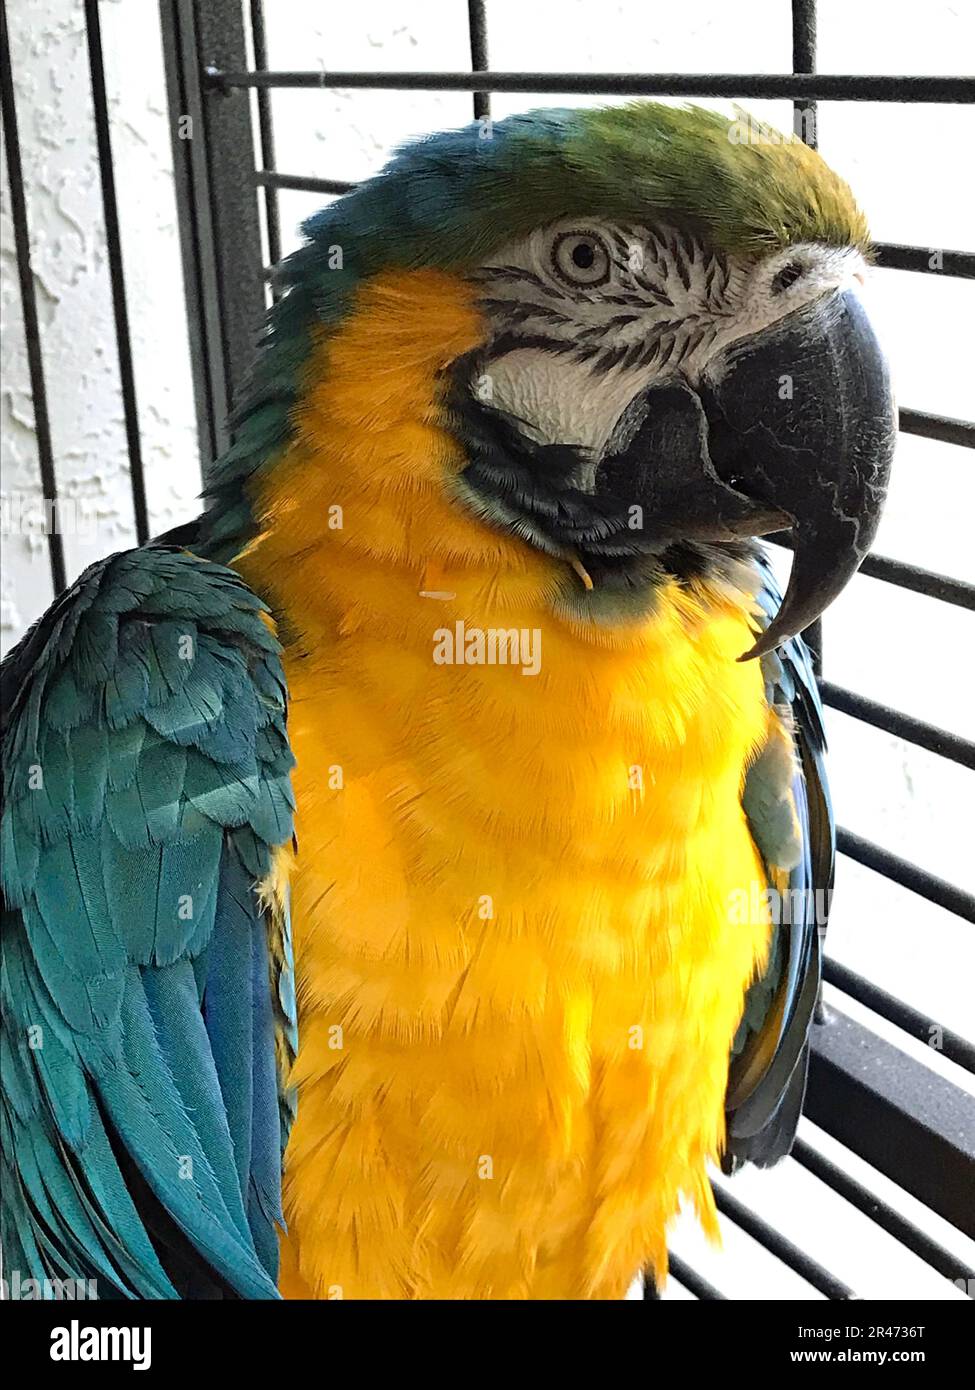 Oiseaux colorés au Sancuary ornithologique de Parrot Mountain Banque D'Images